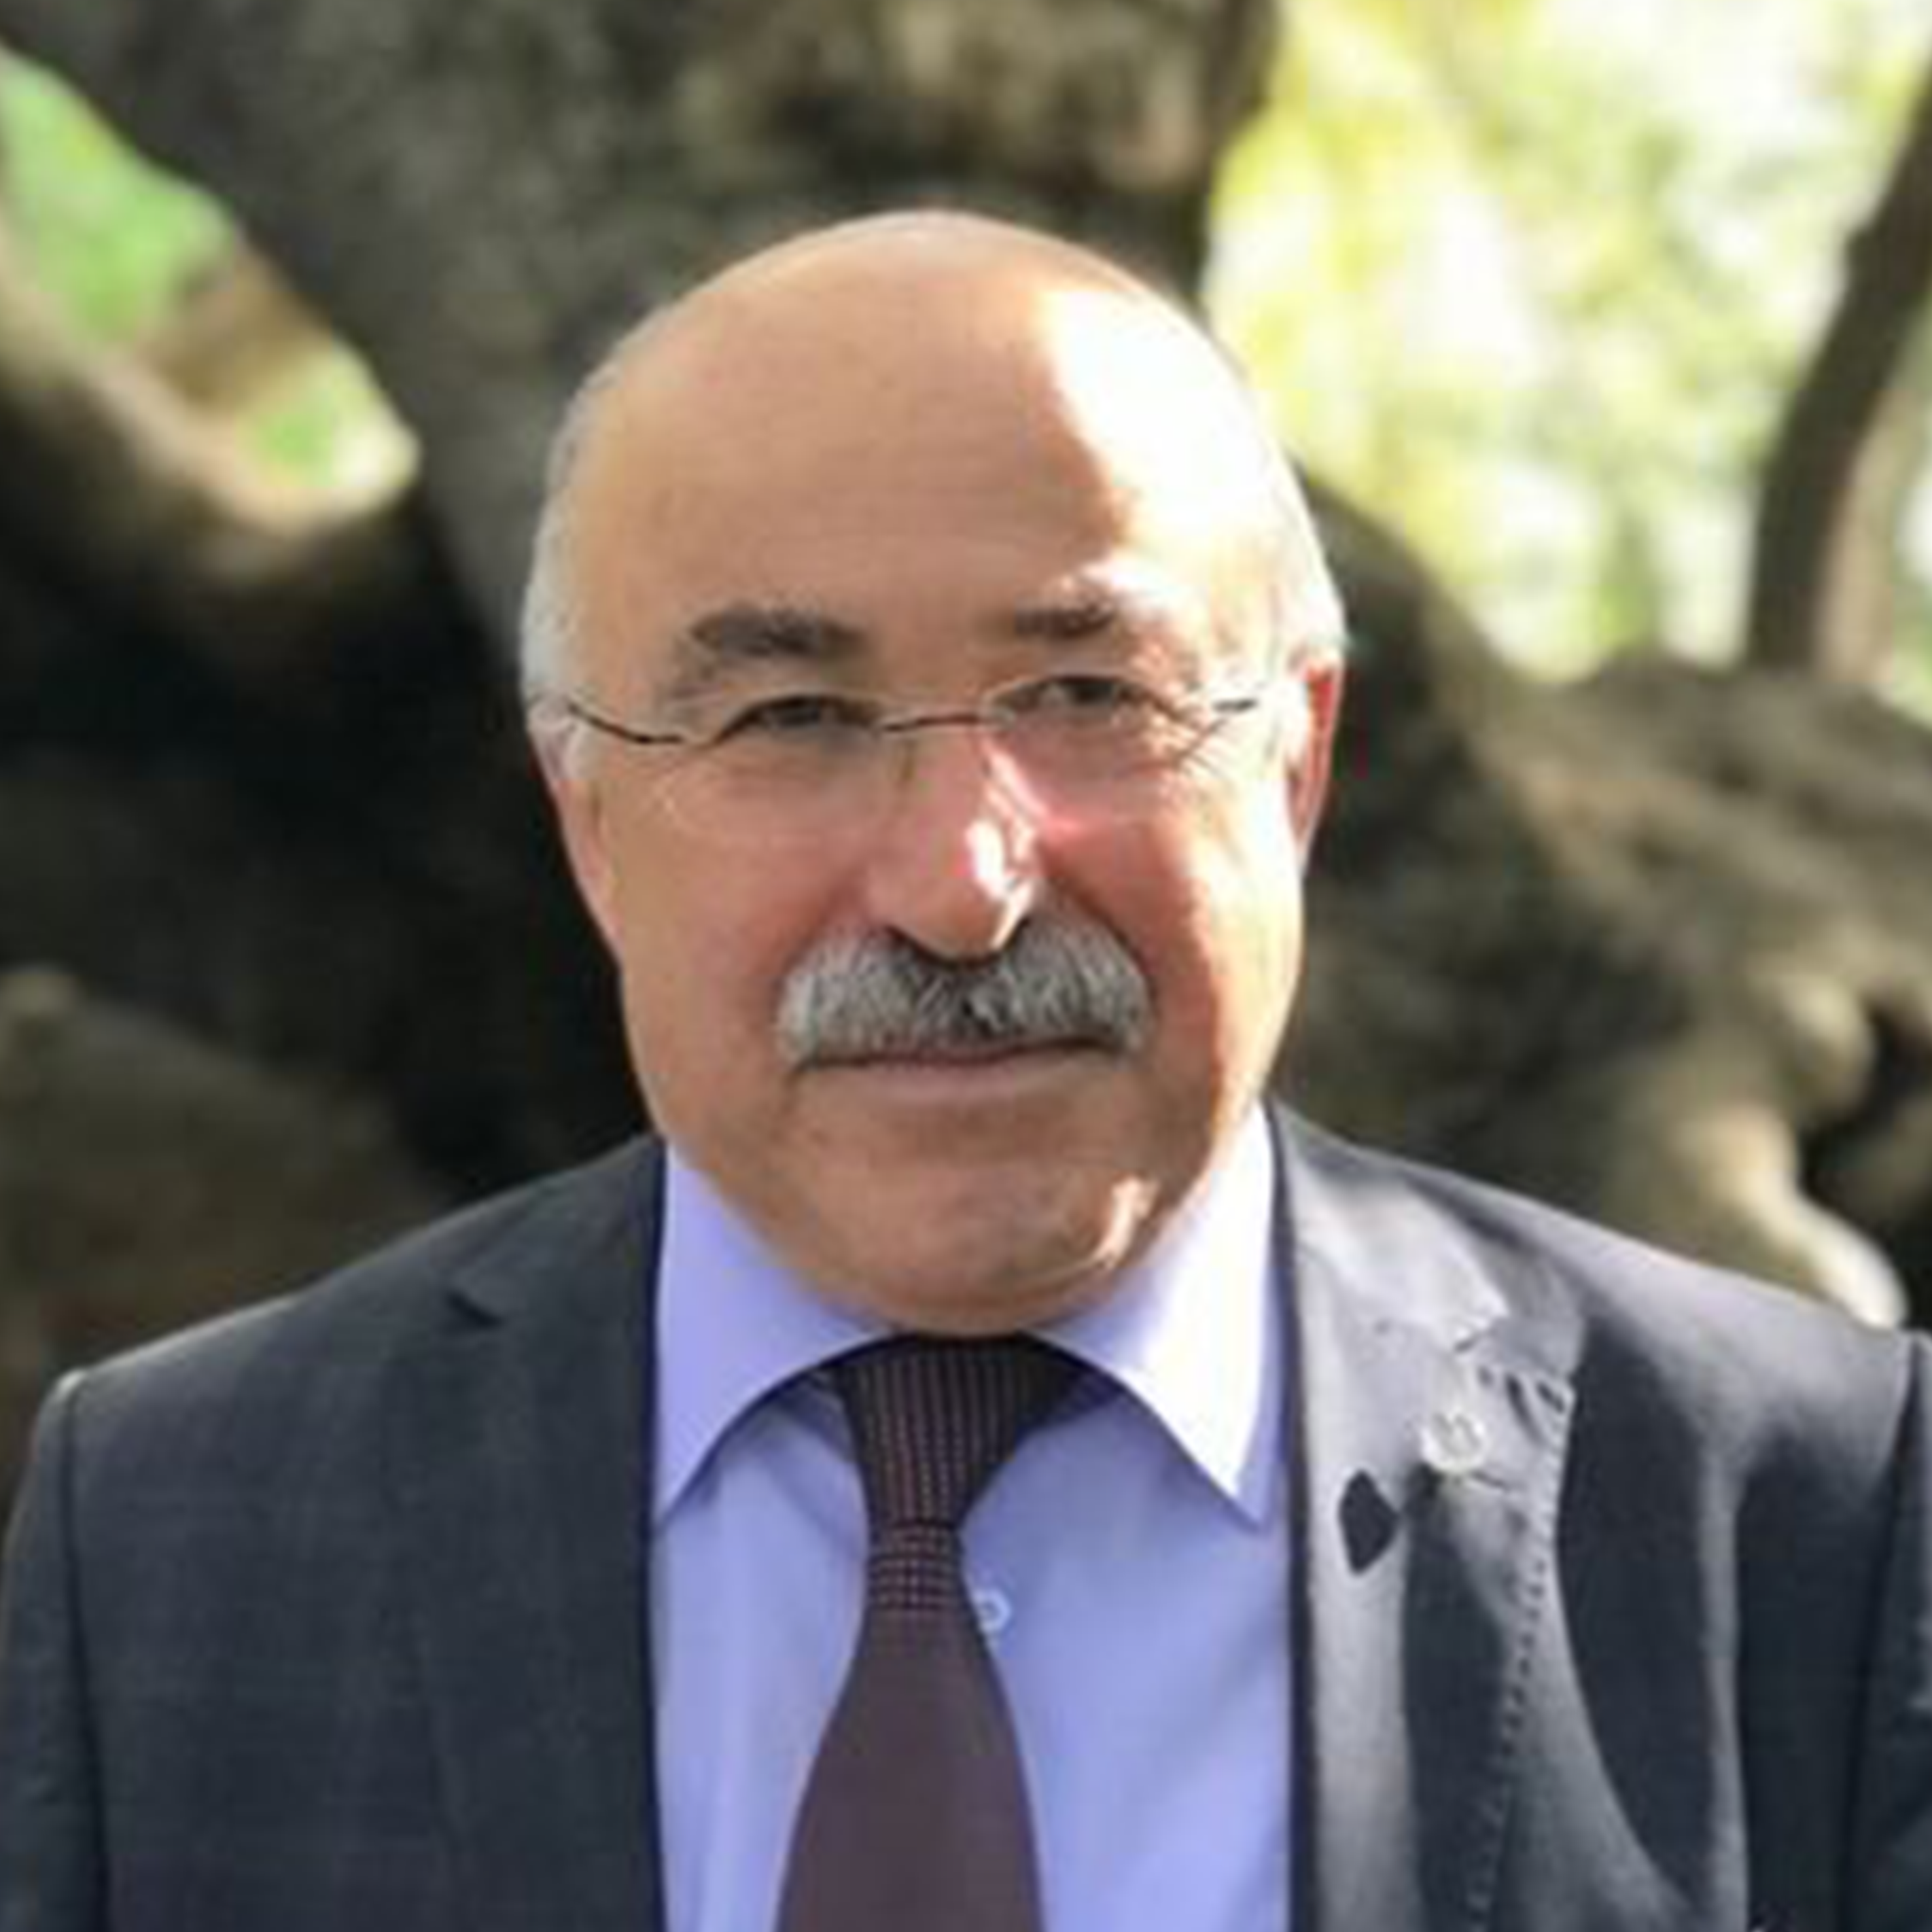 ÖNCELİĞİMİZ TÜRKİYE'DİR - Prof. Dr. Mehmet ÖZ